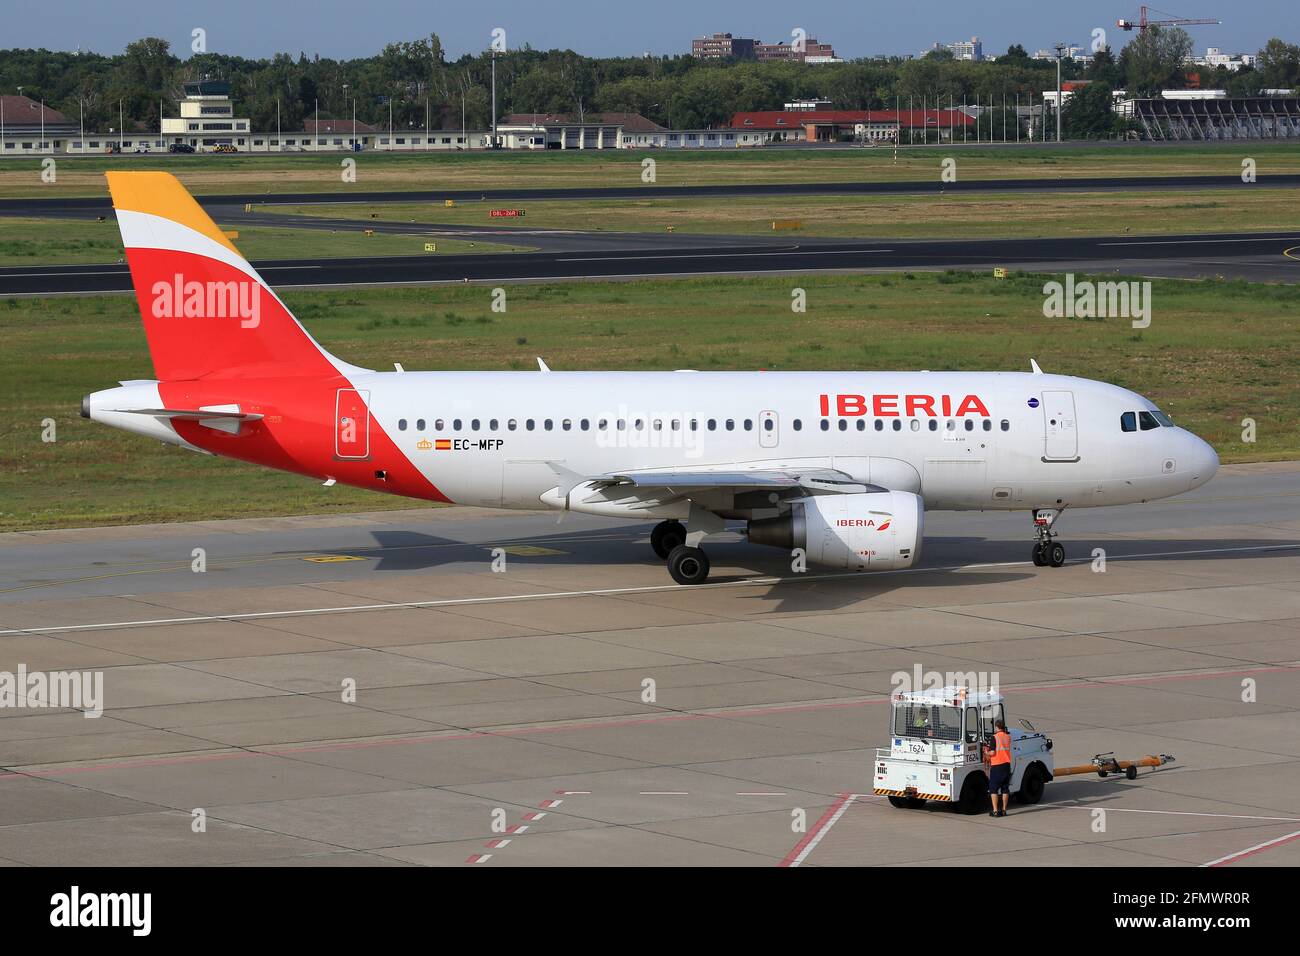 Berlin, Deutschland - 30. August 2017: Iberia Airbus A319 am Flughafen Berlin-Tegel (TXL) in Deutschland. Airbus ist ein Flugzeughersteller aus Toulouse, Fran Stockfoto